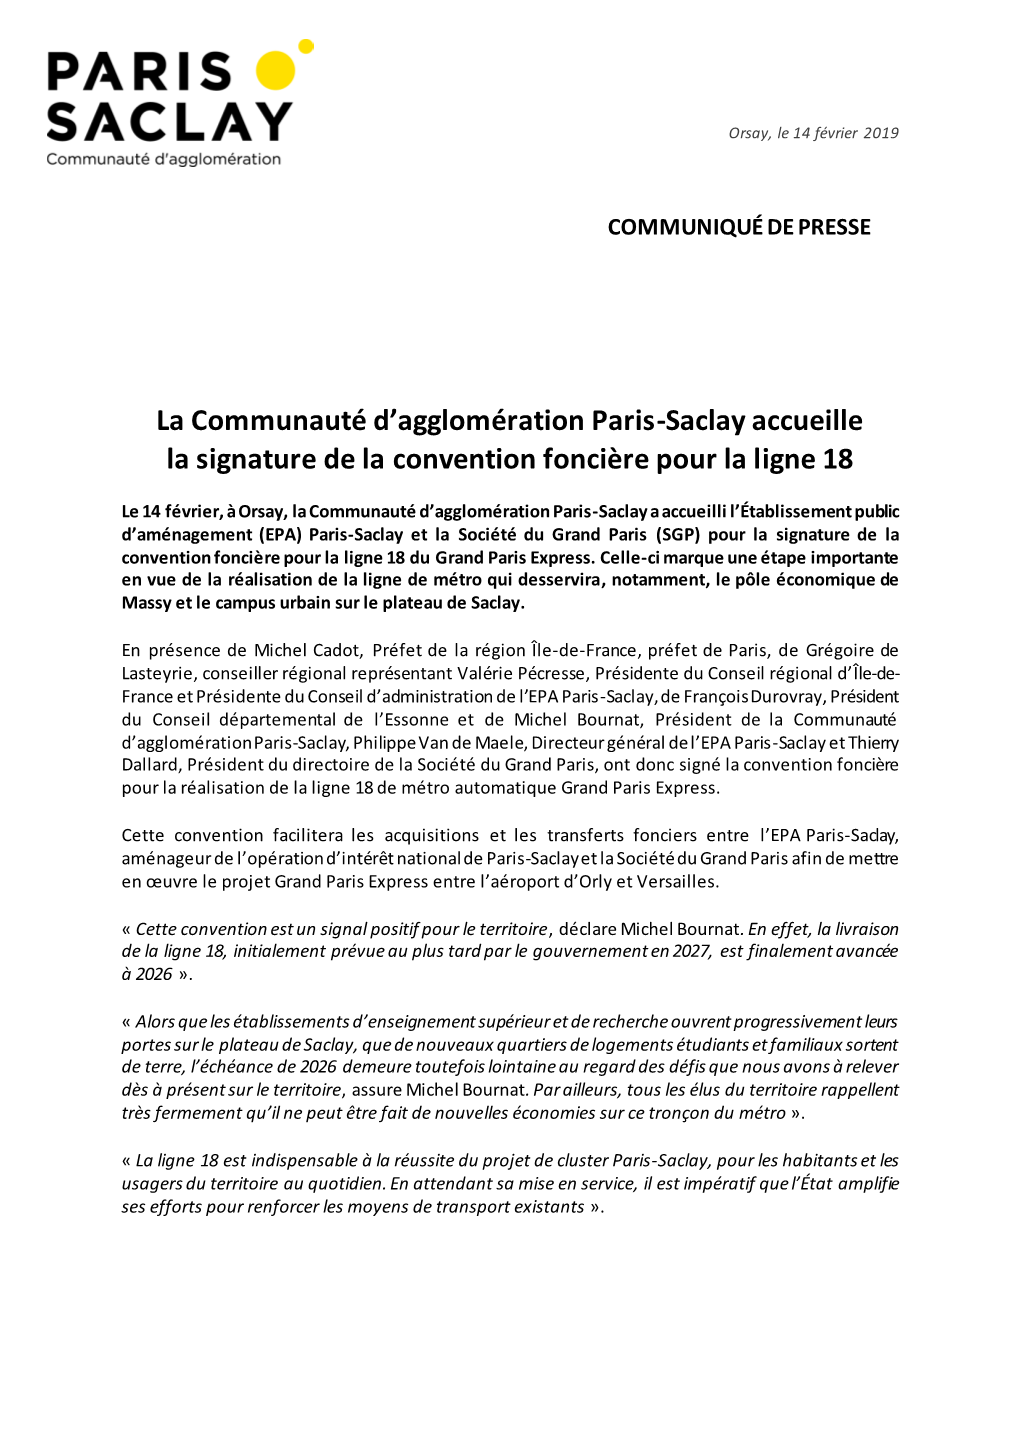 La Communauté D'agglomération Paris-Saclay Accueille La Signature De La Convention Foncière Pour La Ligne 18